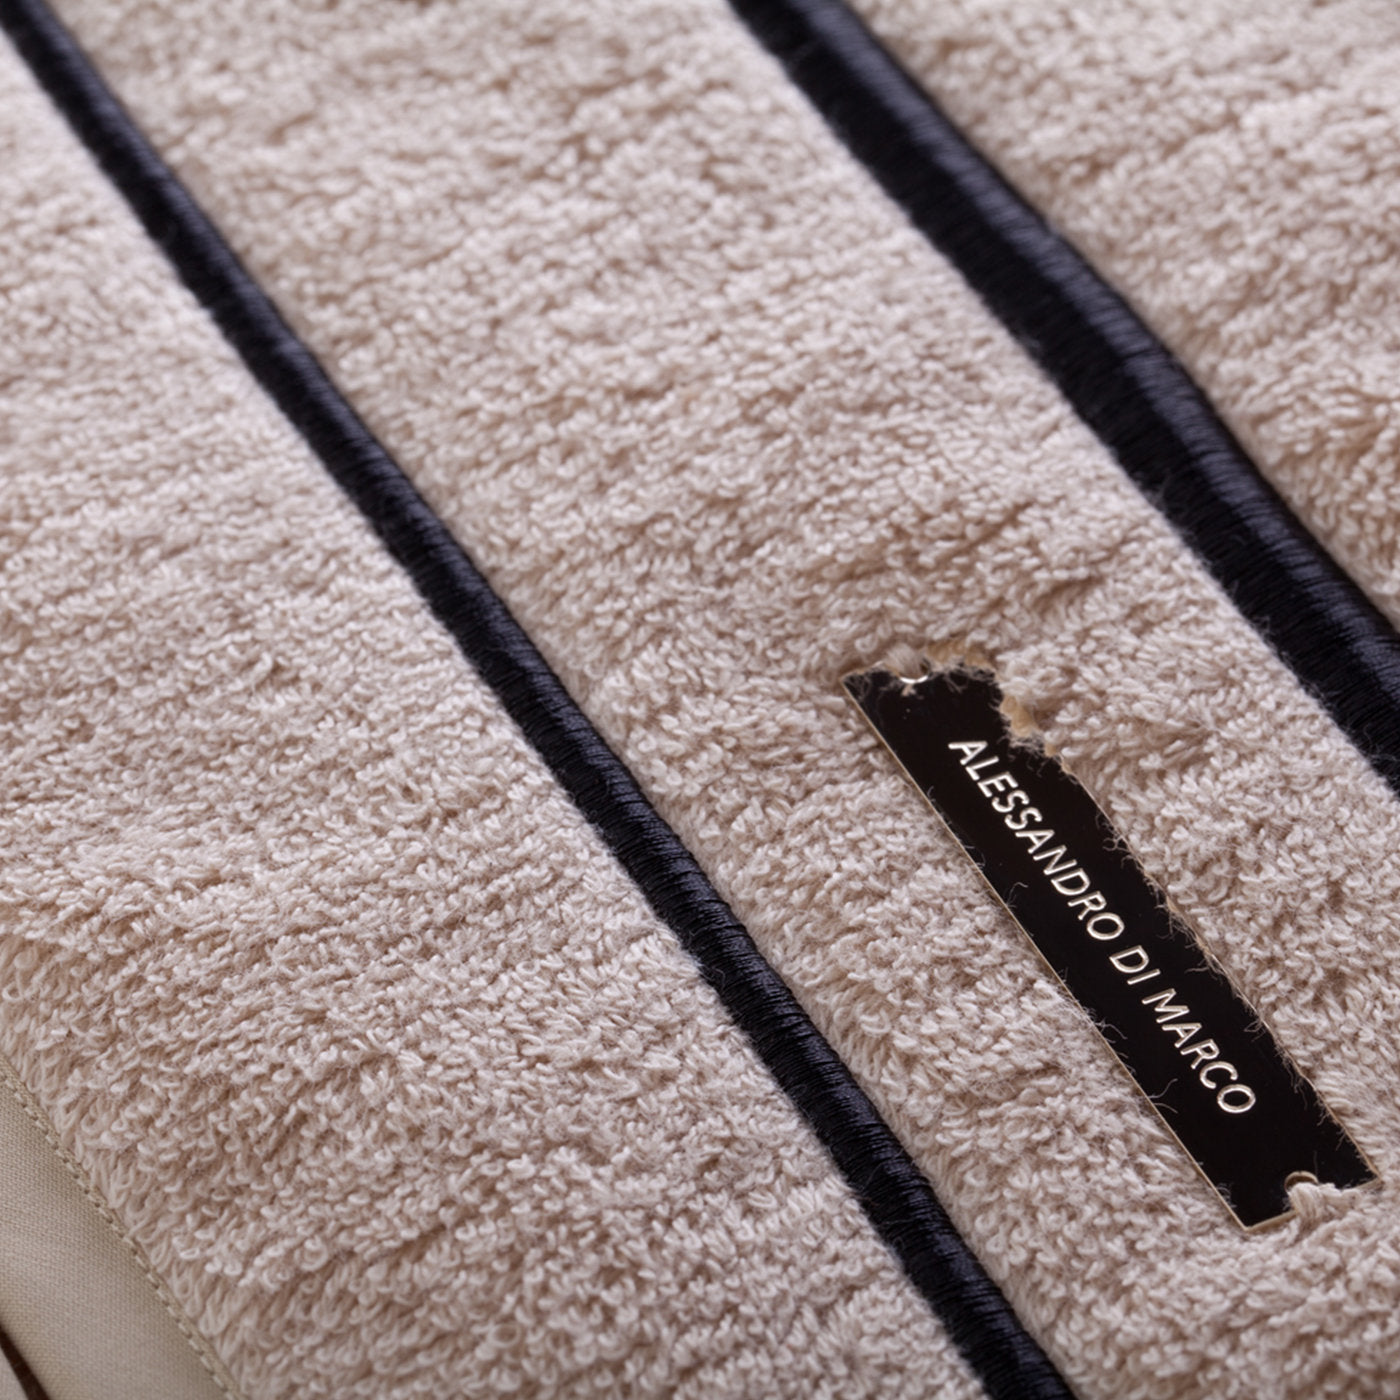 Juego de toallas de baño grandes - negro y beige - Vista alternativa 1